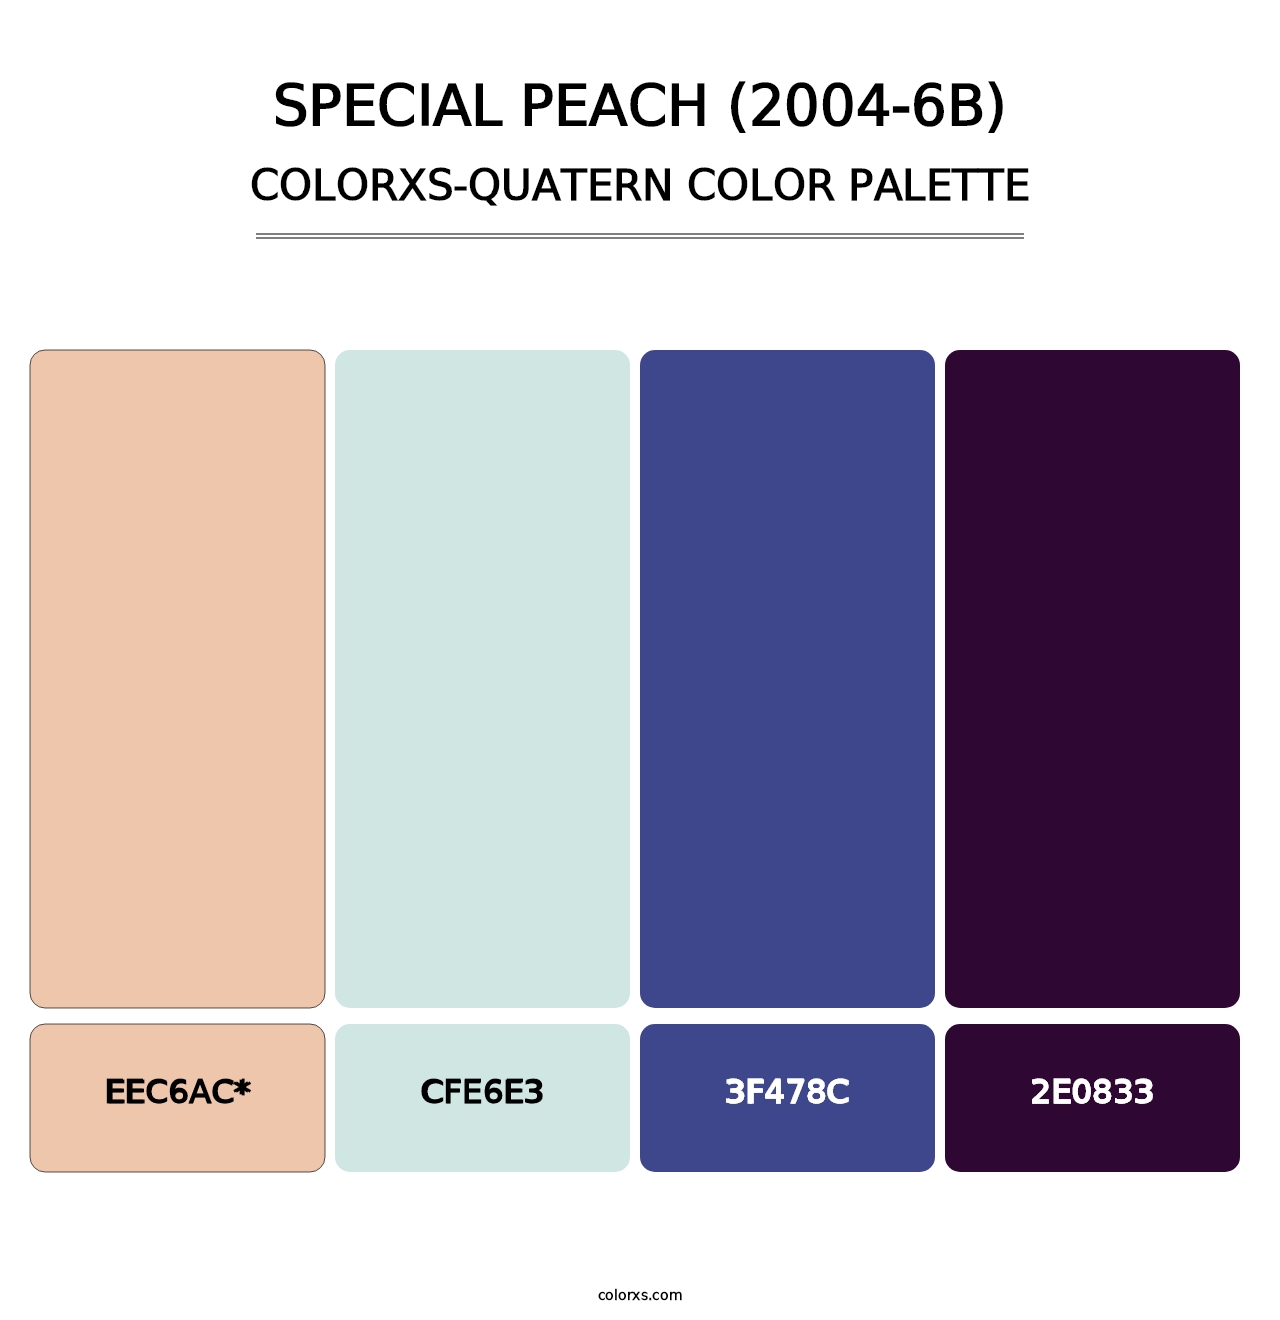 Special Peach (2004-6B) - Colorxs Quad Palette